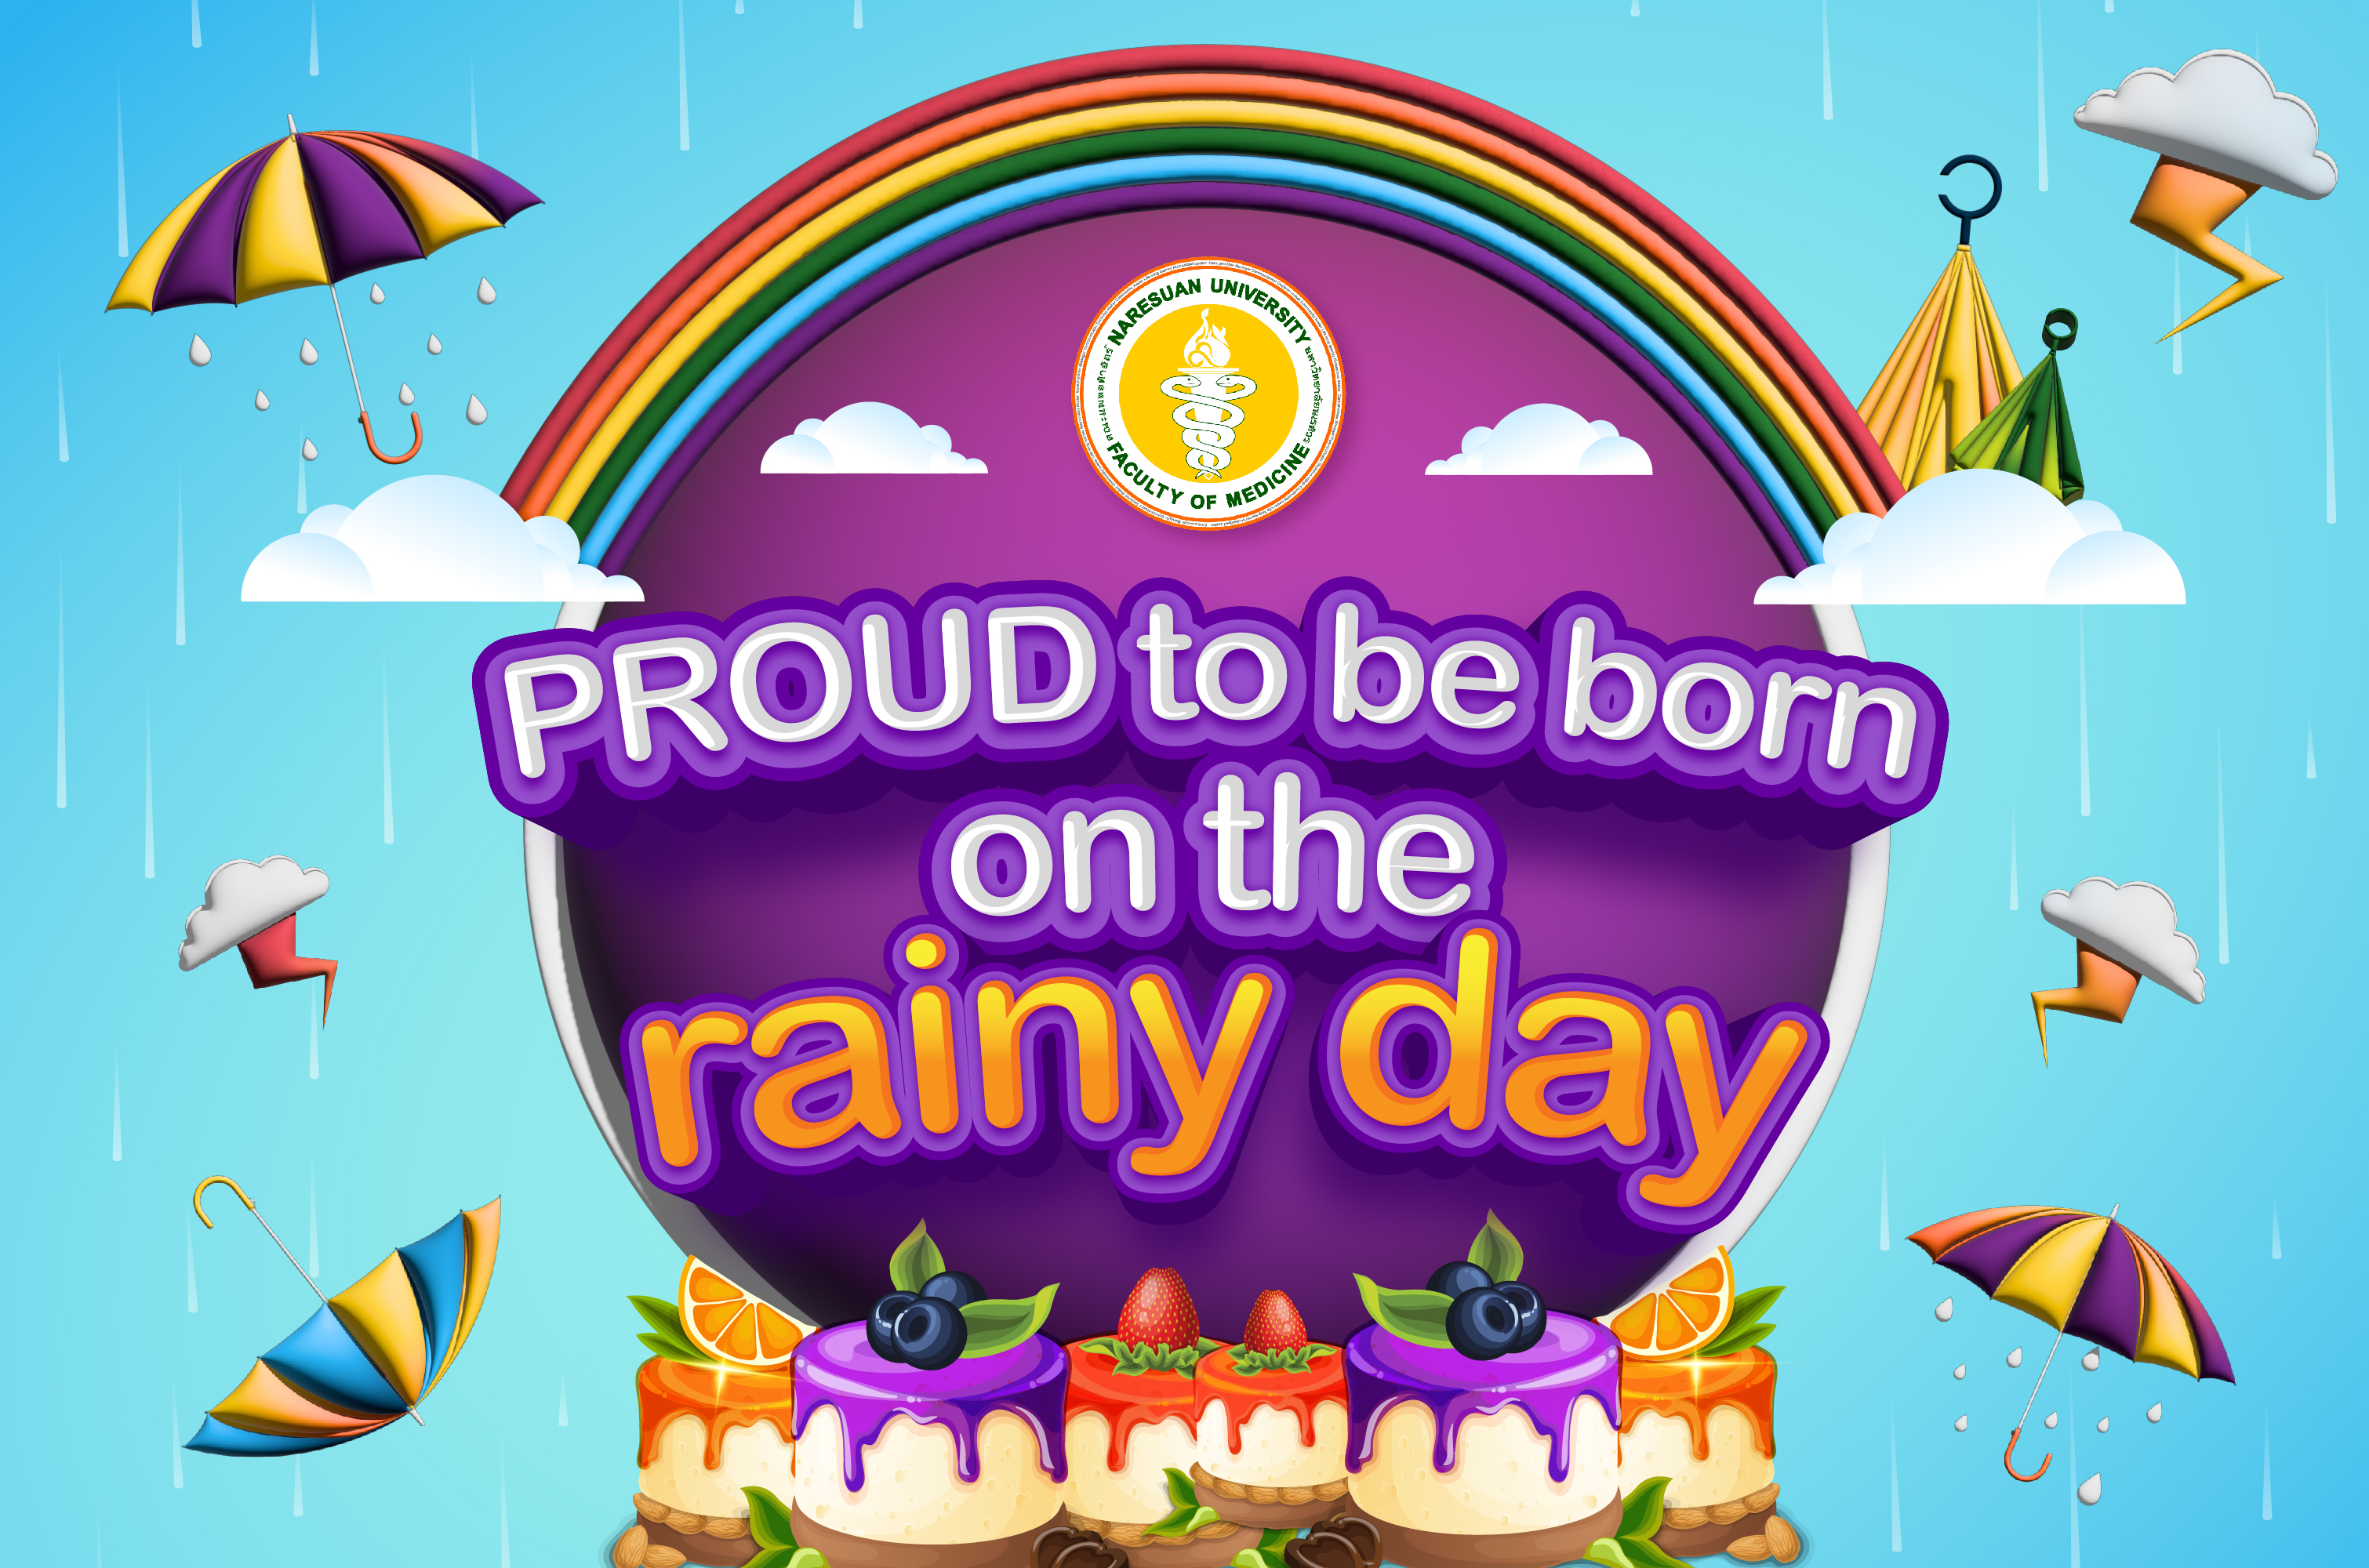 ขอเชิญบุคลากรที่เกิดเดือนพฤษภาคมและมิถุนายน มาร่วมสนุก และรับประทานอาหารร่วมกัน PROUD to be born on the rainy day 